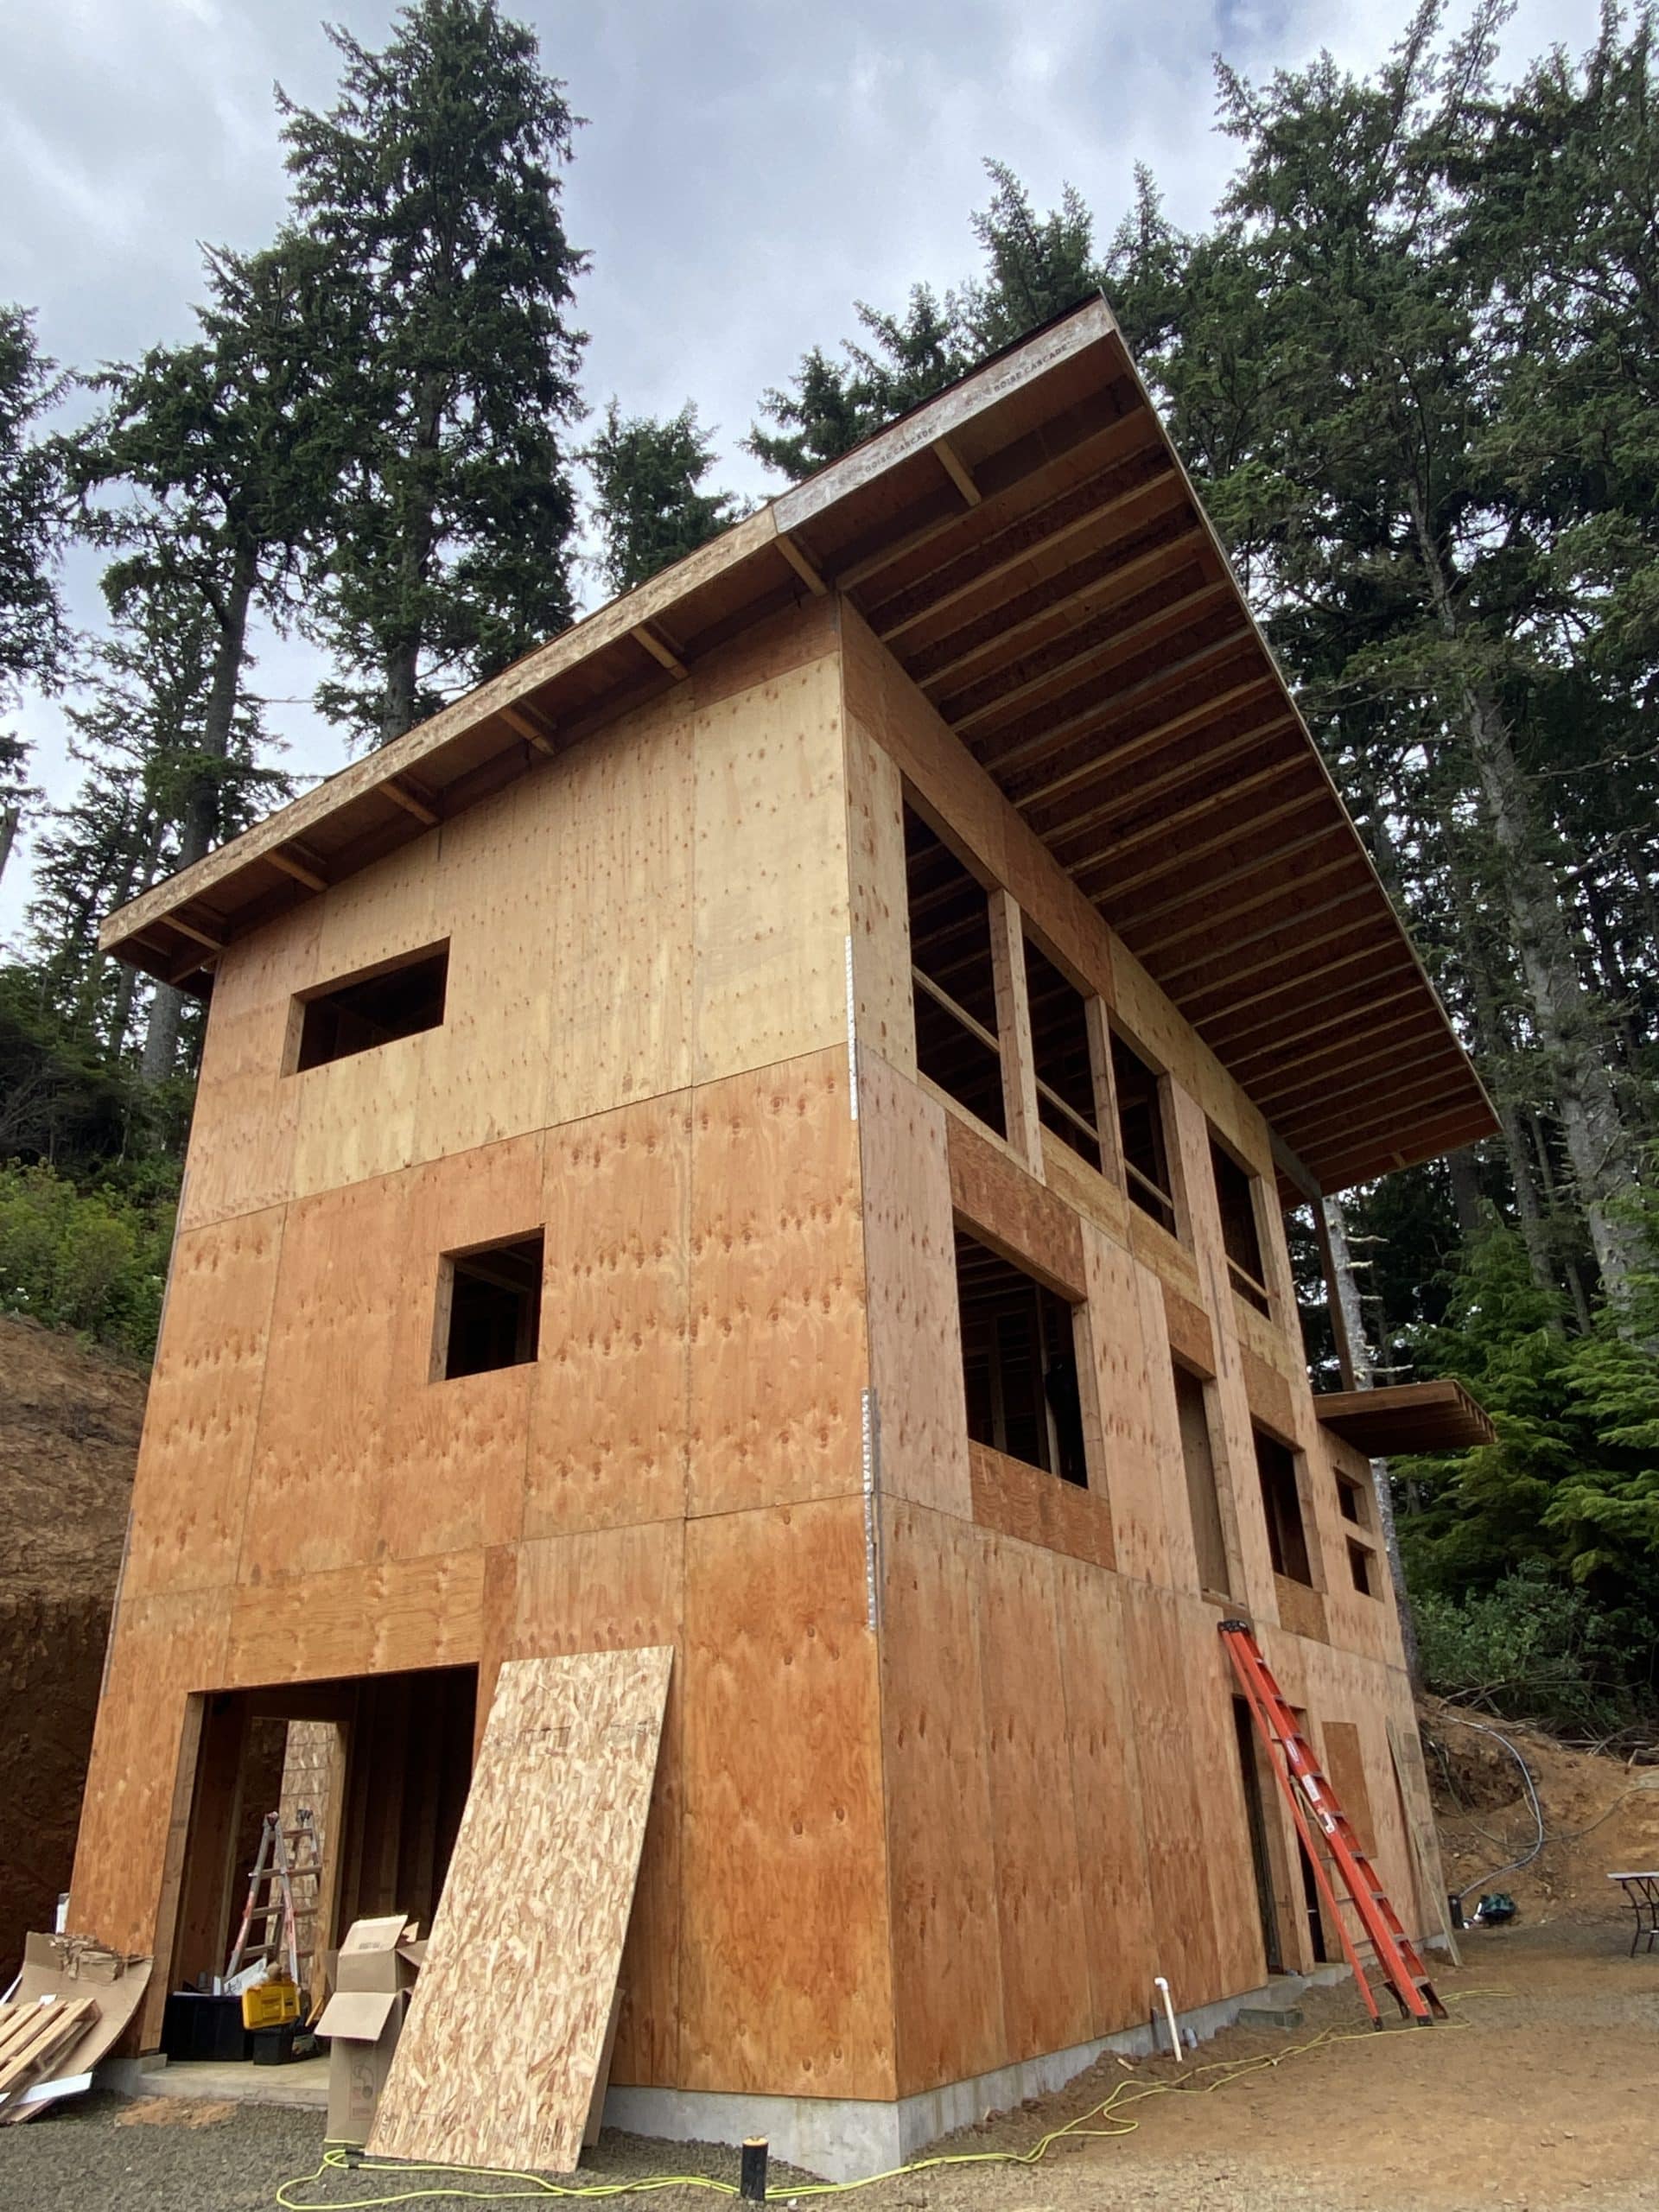 Residential construction loan in Depoe Bay, Oregon